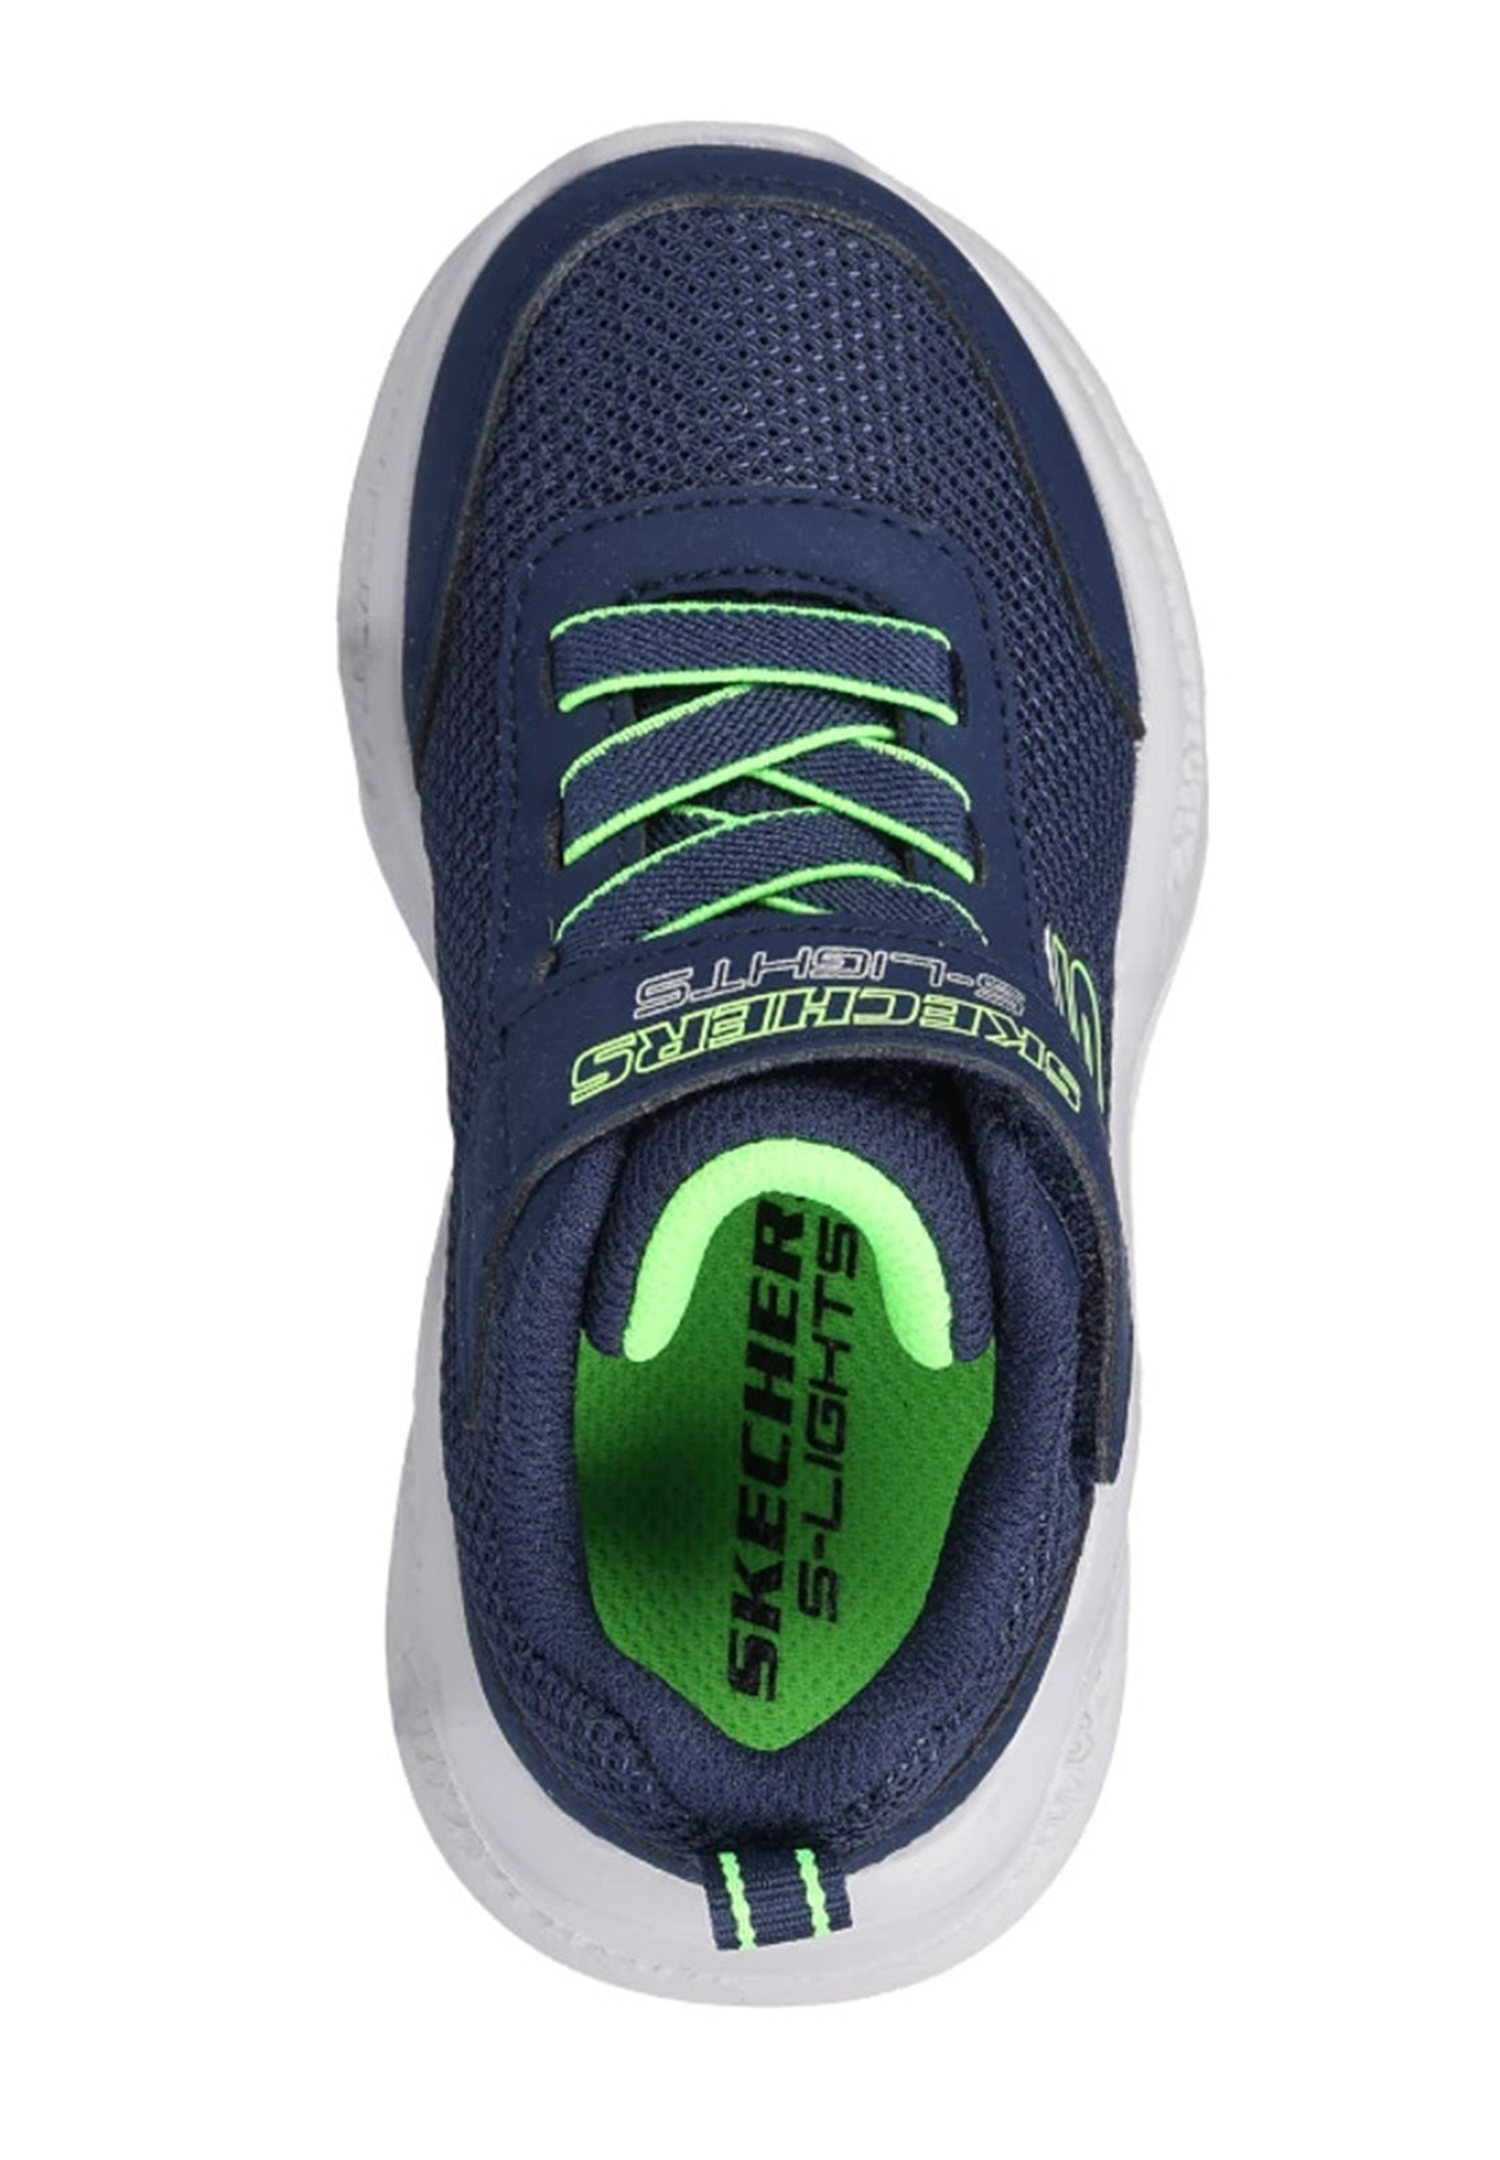 Skechers S-Lights: Meteor-Lights Sneaker Schuhe LED 401675L NVLM blau/grün